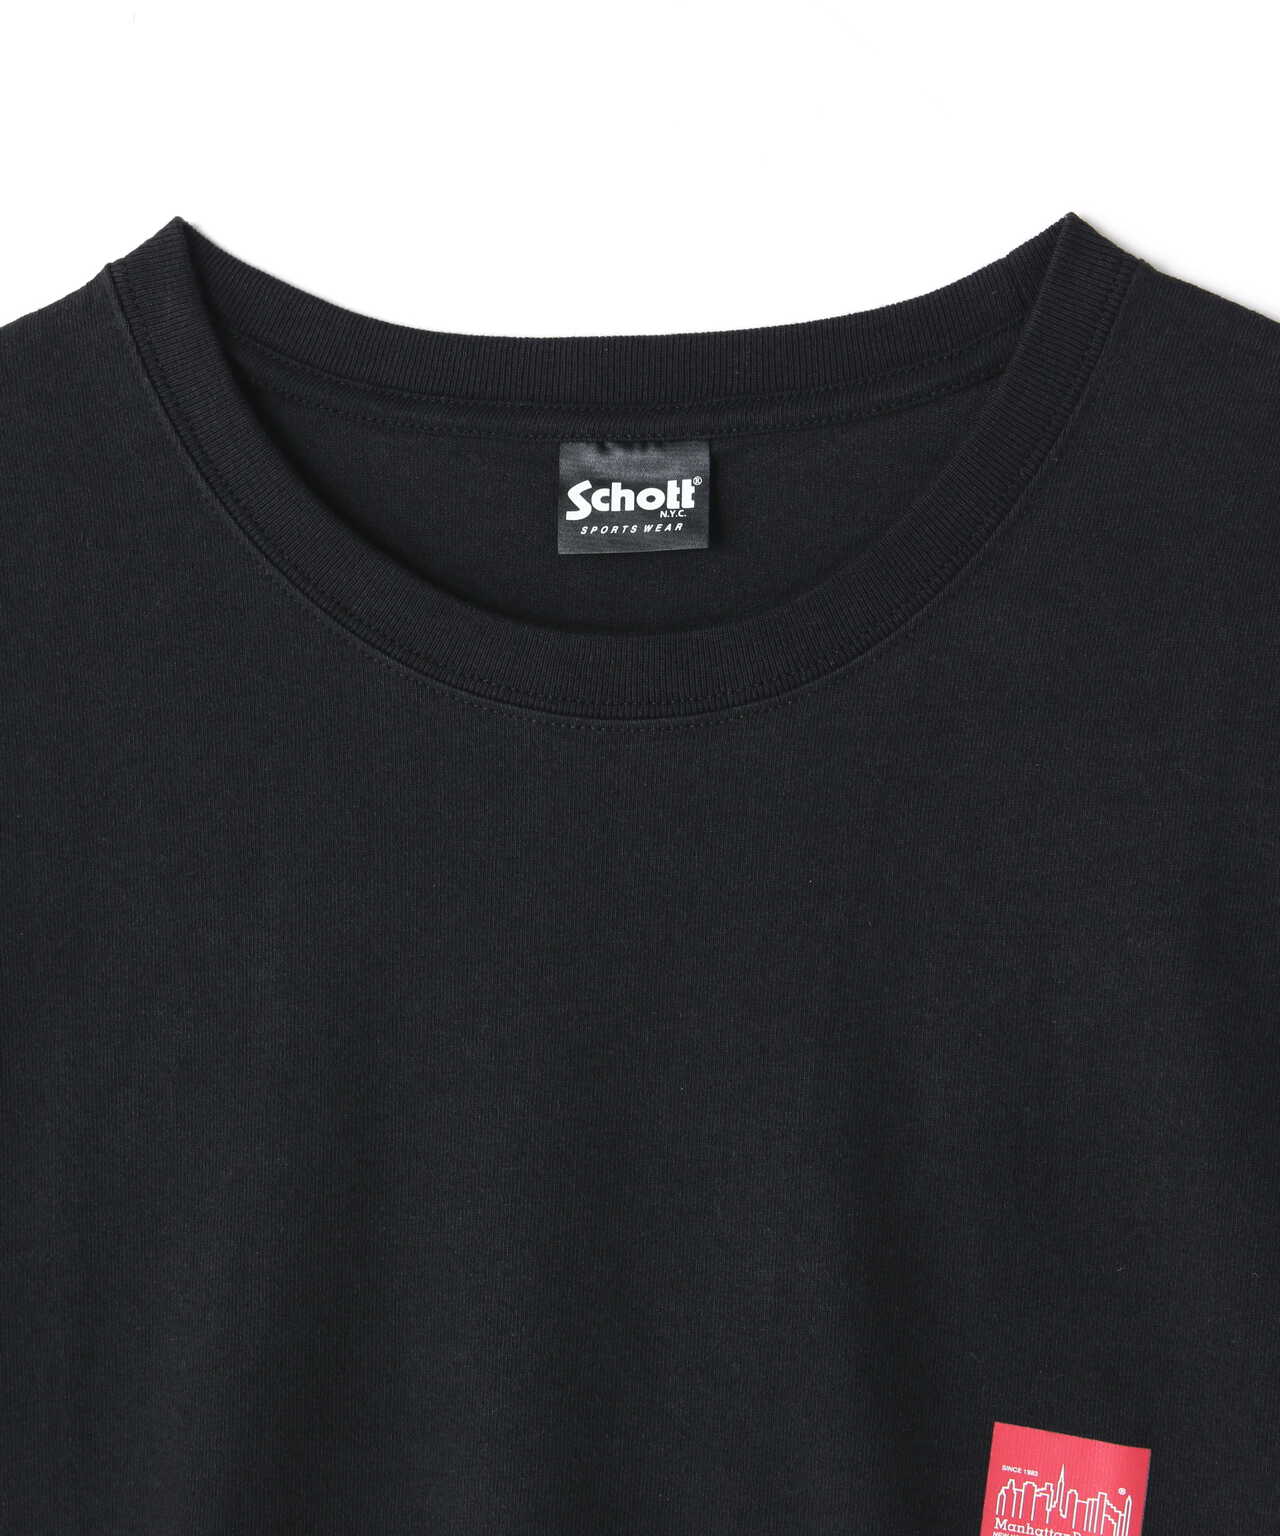 xManhattan Portage/マンハッタンポーテージ/SKYLINE  T-SHIRT/スカイライン Tシャツ